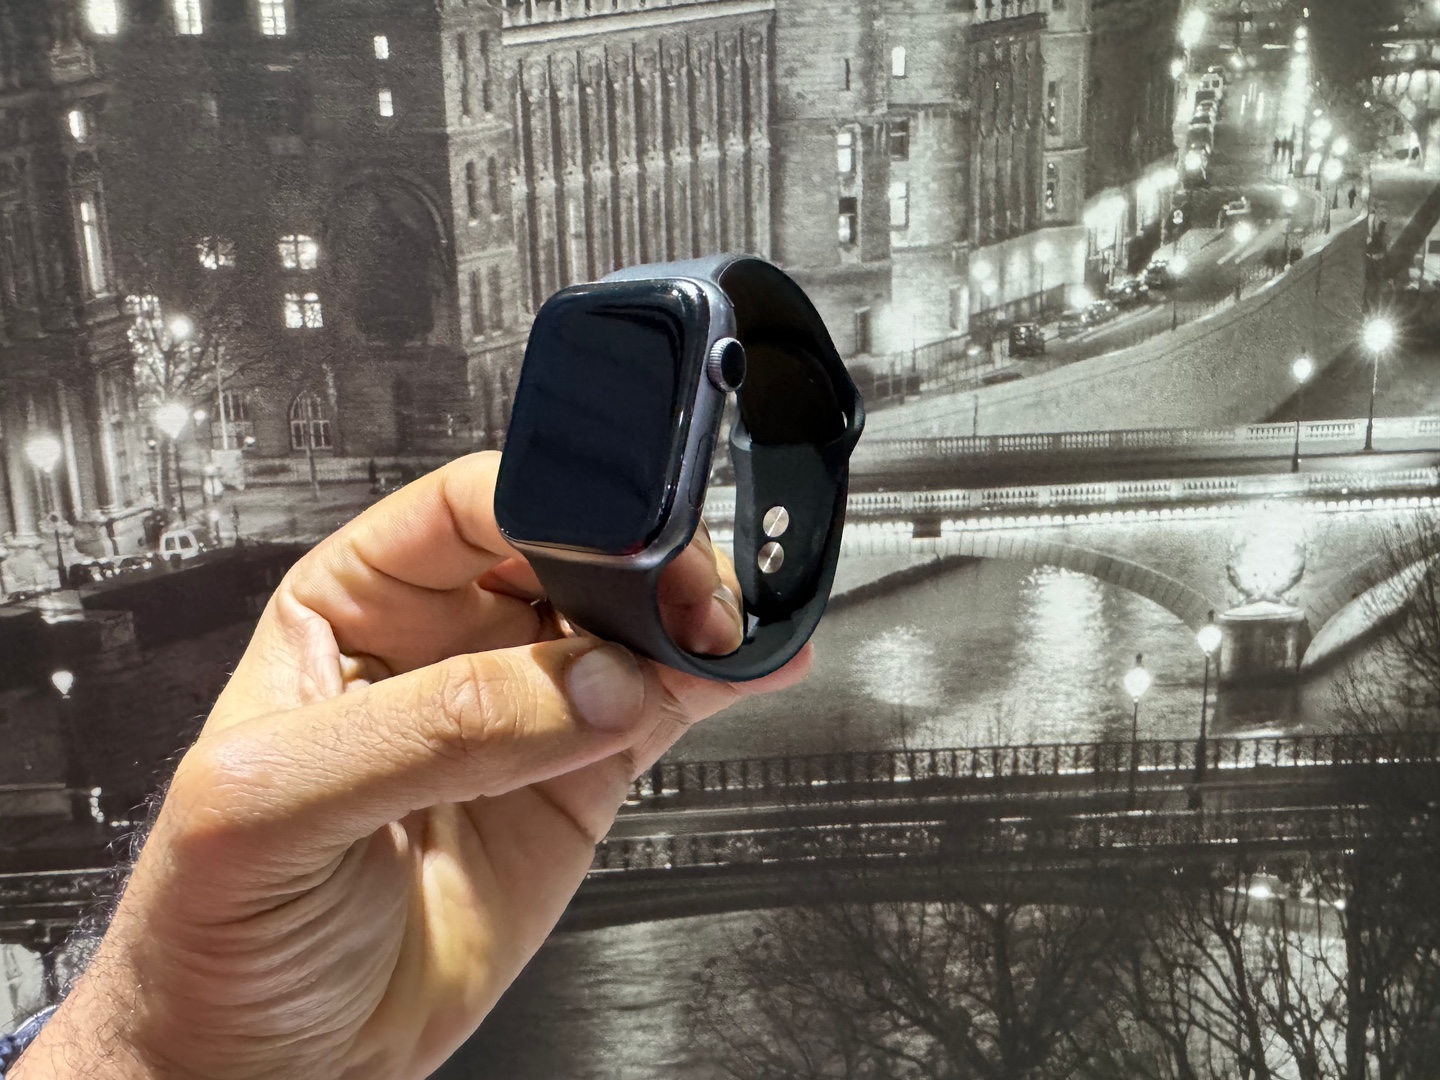 accesorios para electronica - Apple Watch Series 4 44mm GPS Space Gray Usado GarantÍa, RD$ 11,500 NEG